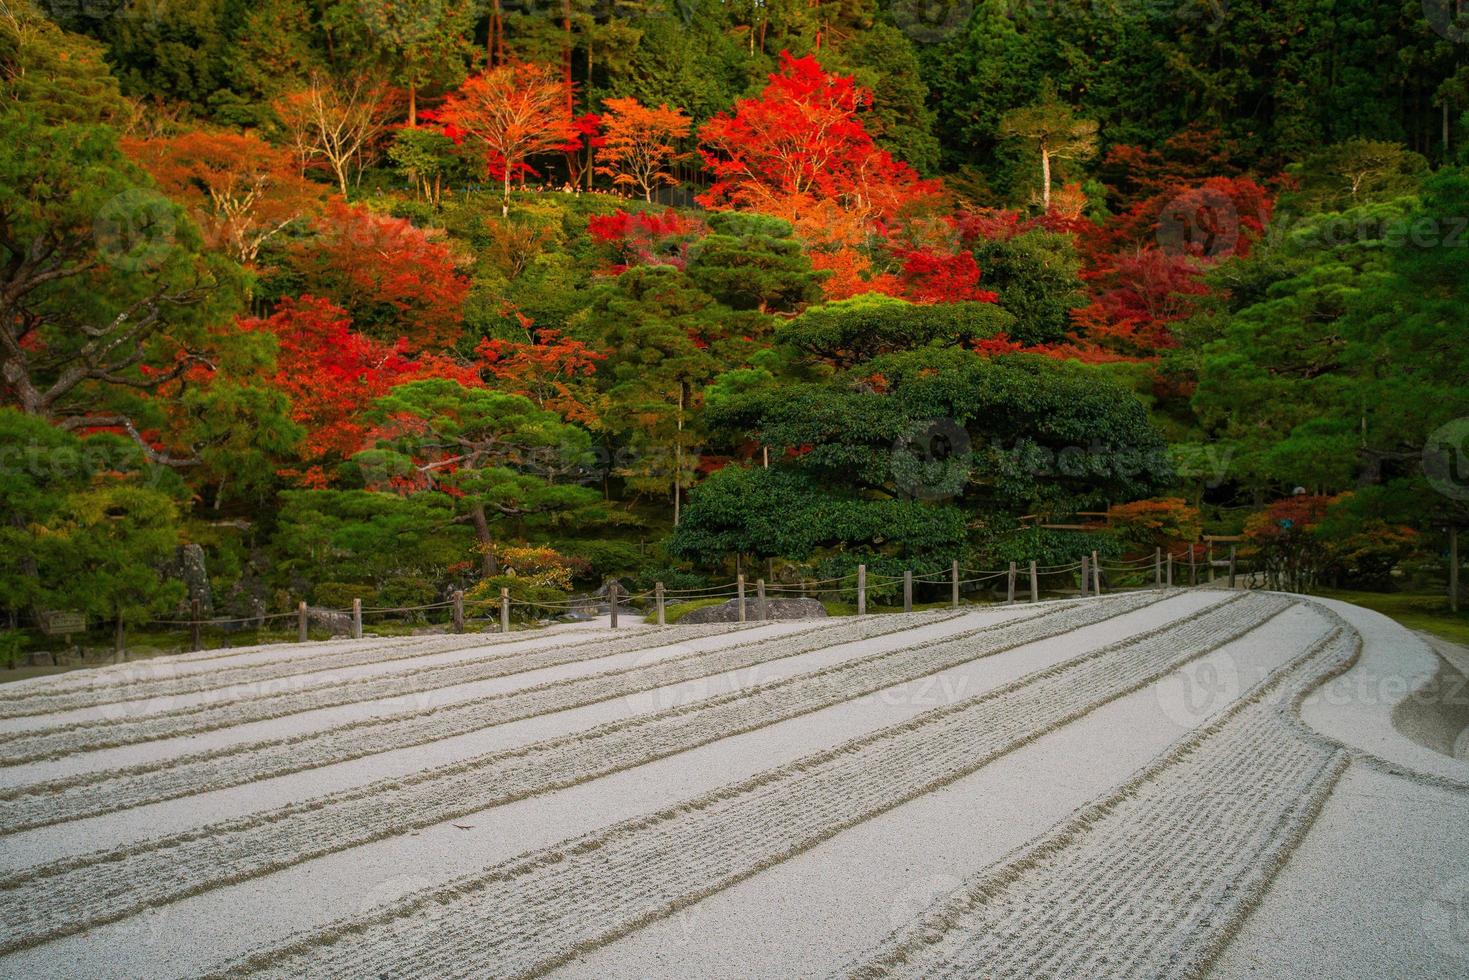 jardin de sable ginshaden, jardin zen ou jardin de rocaille japonais, en ginkaku-ji, ou temple du pavillon d'argent officiellement nommé jisho-ji, ou temple de la miséricorde brillante, kyoto, kansai, japon photo